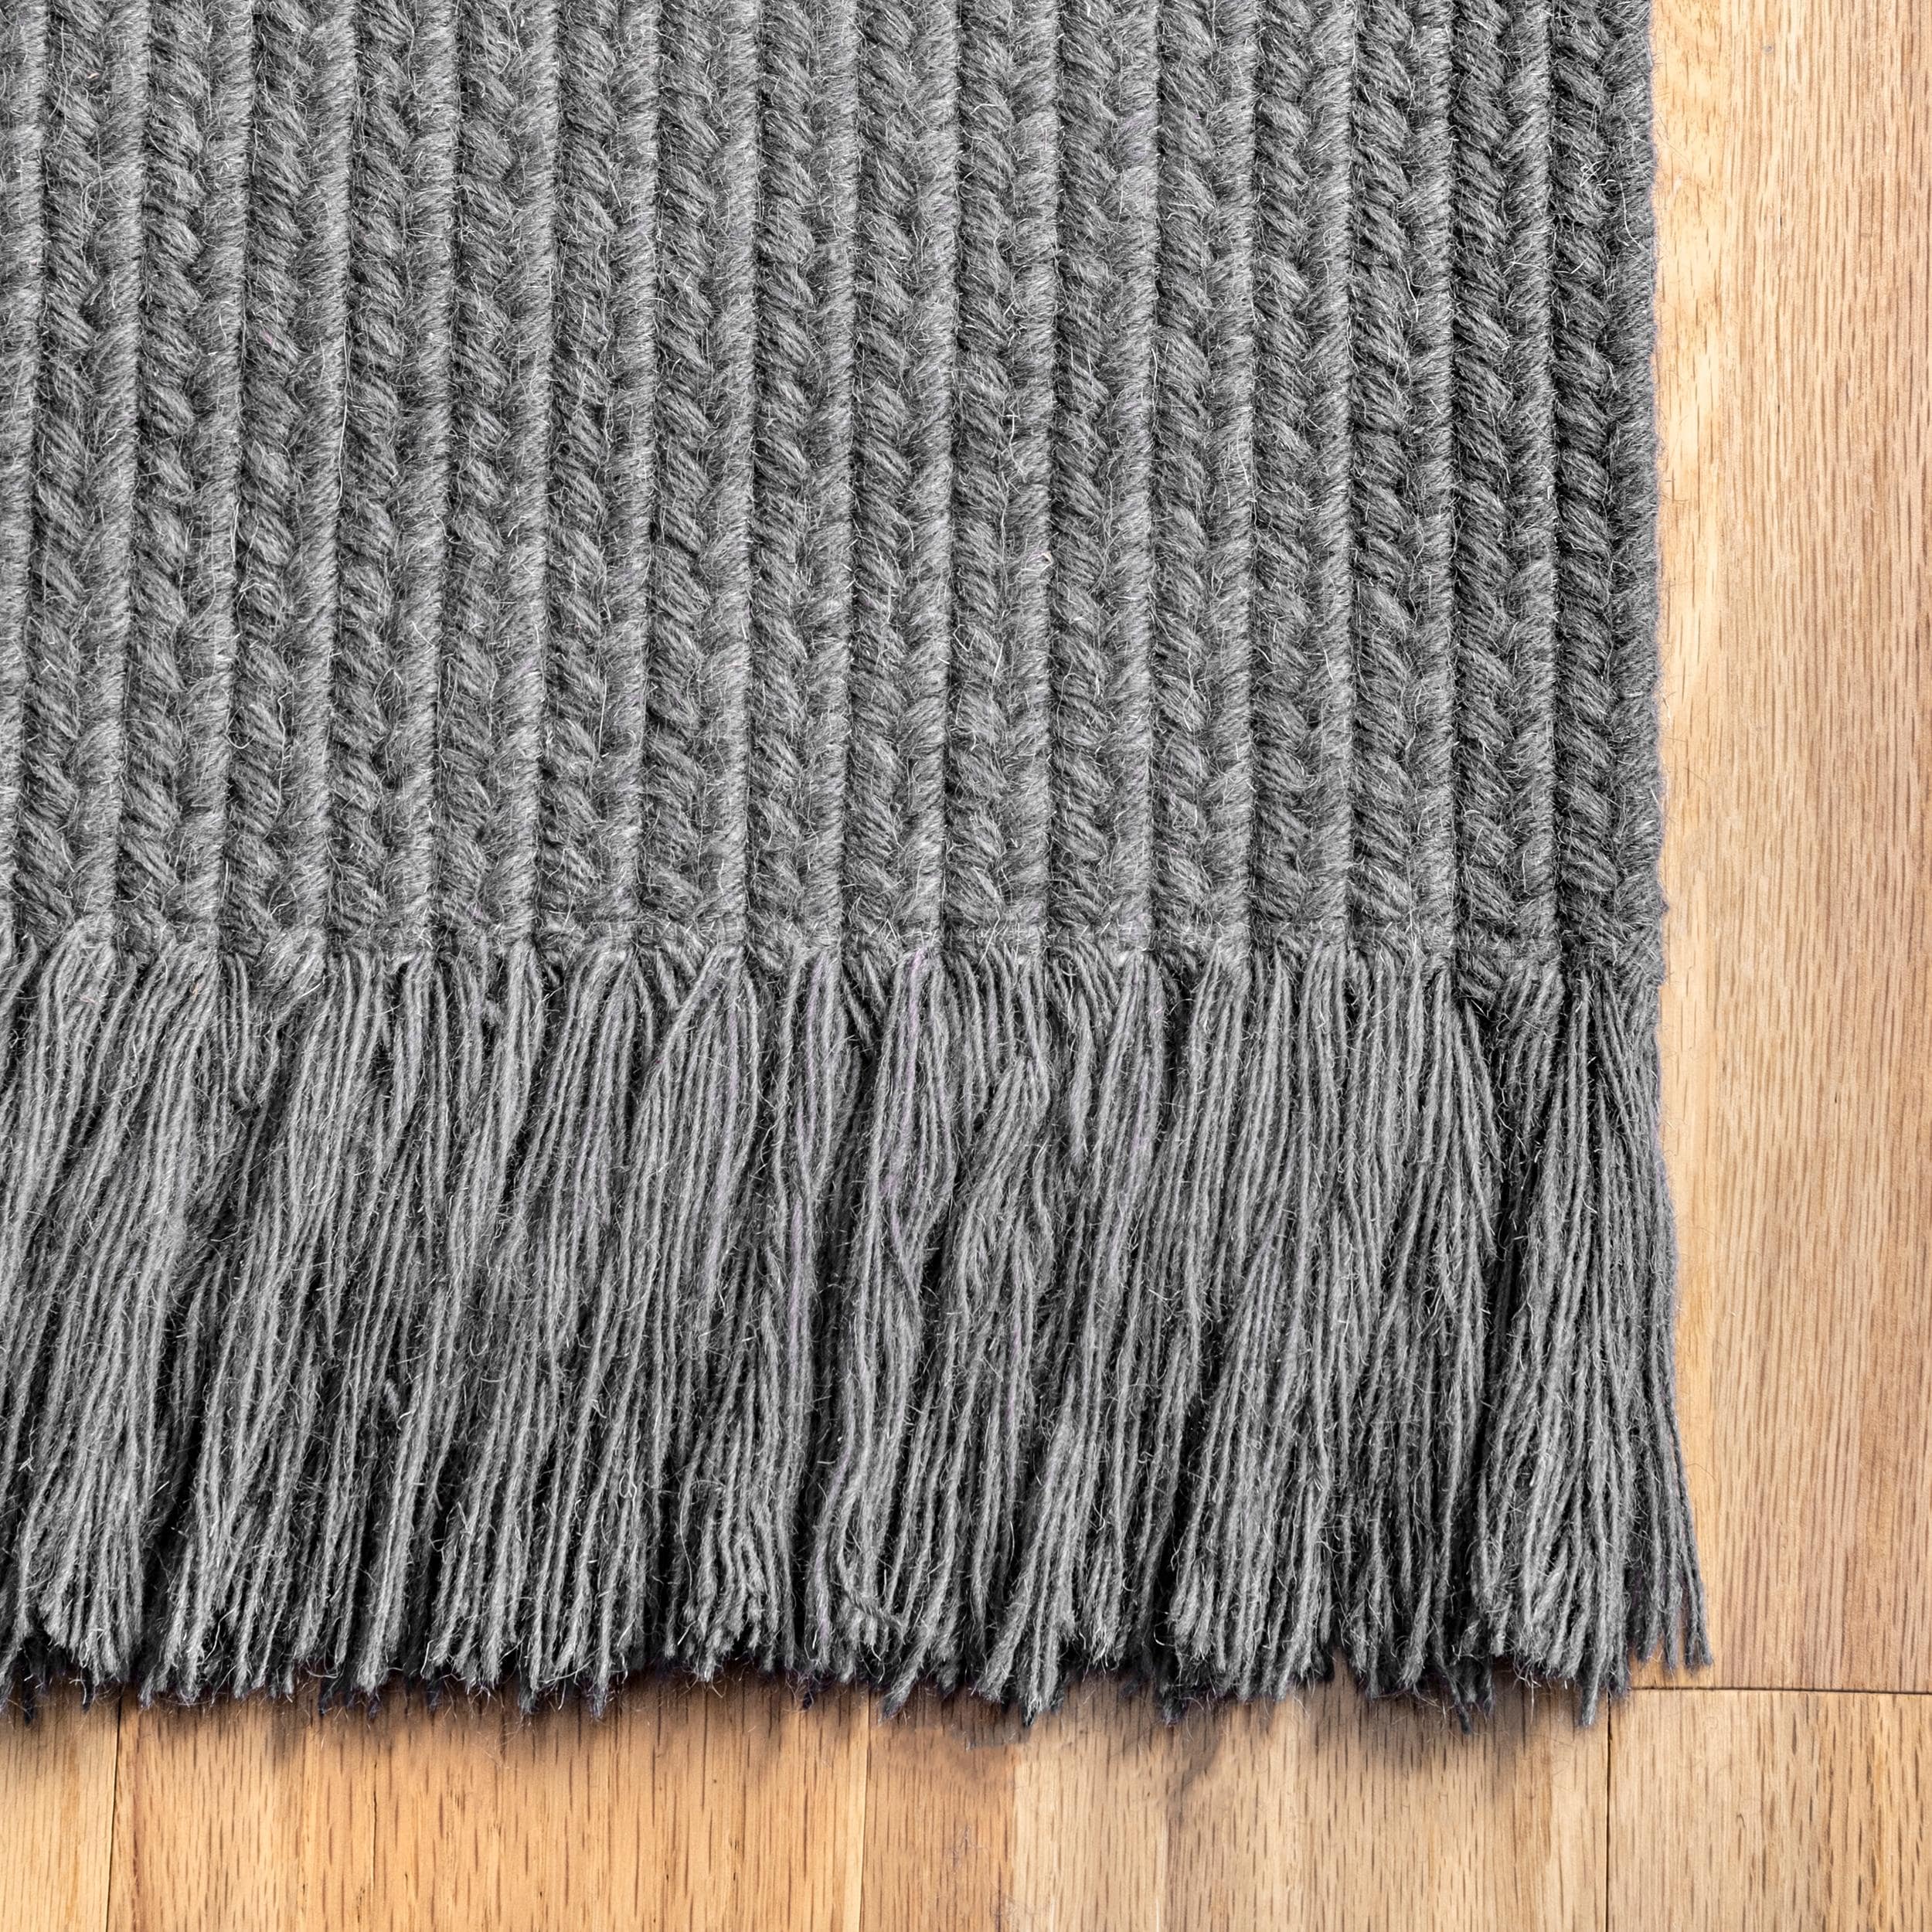 nuLOOM 6 x 9 Braided Wool Gray Indoor/Outdoor Solid Coastal Area Rug in ...